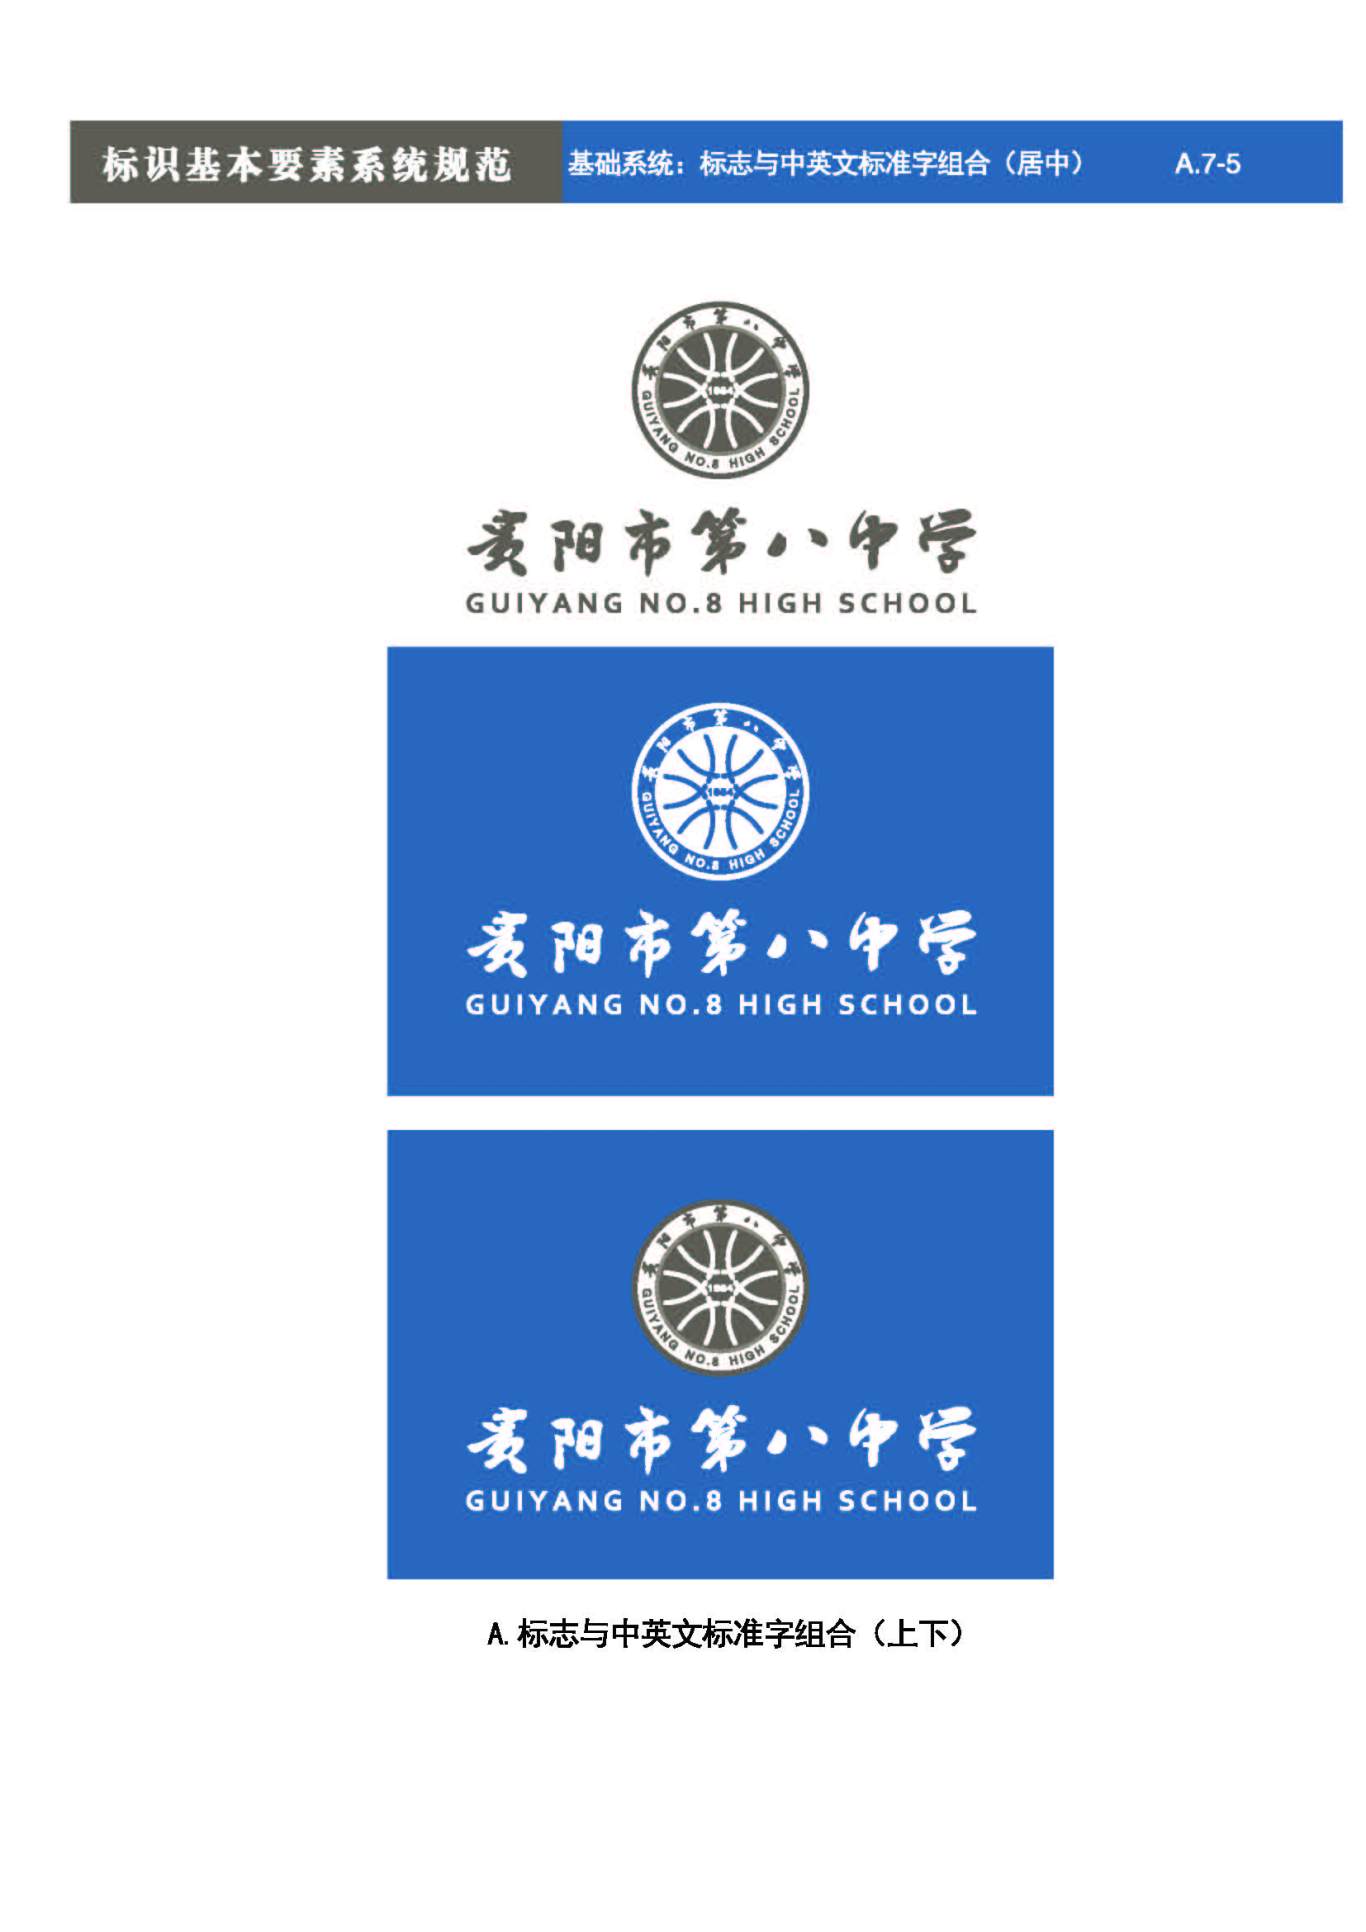 貴陽第八中學Logo、VIS設計圖26